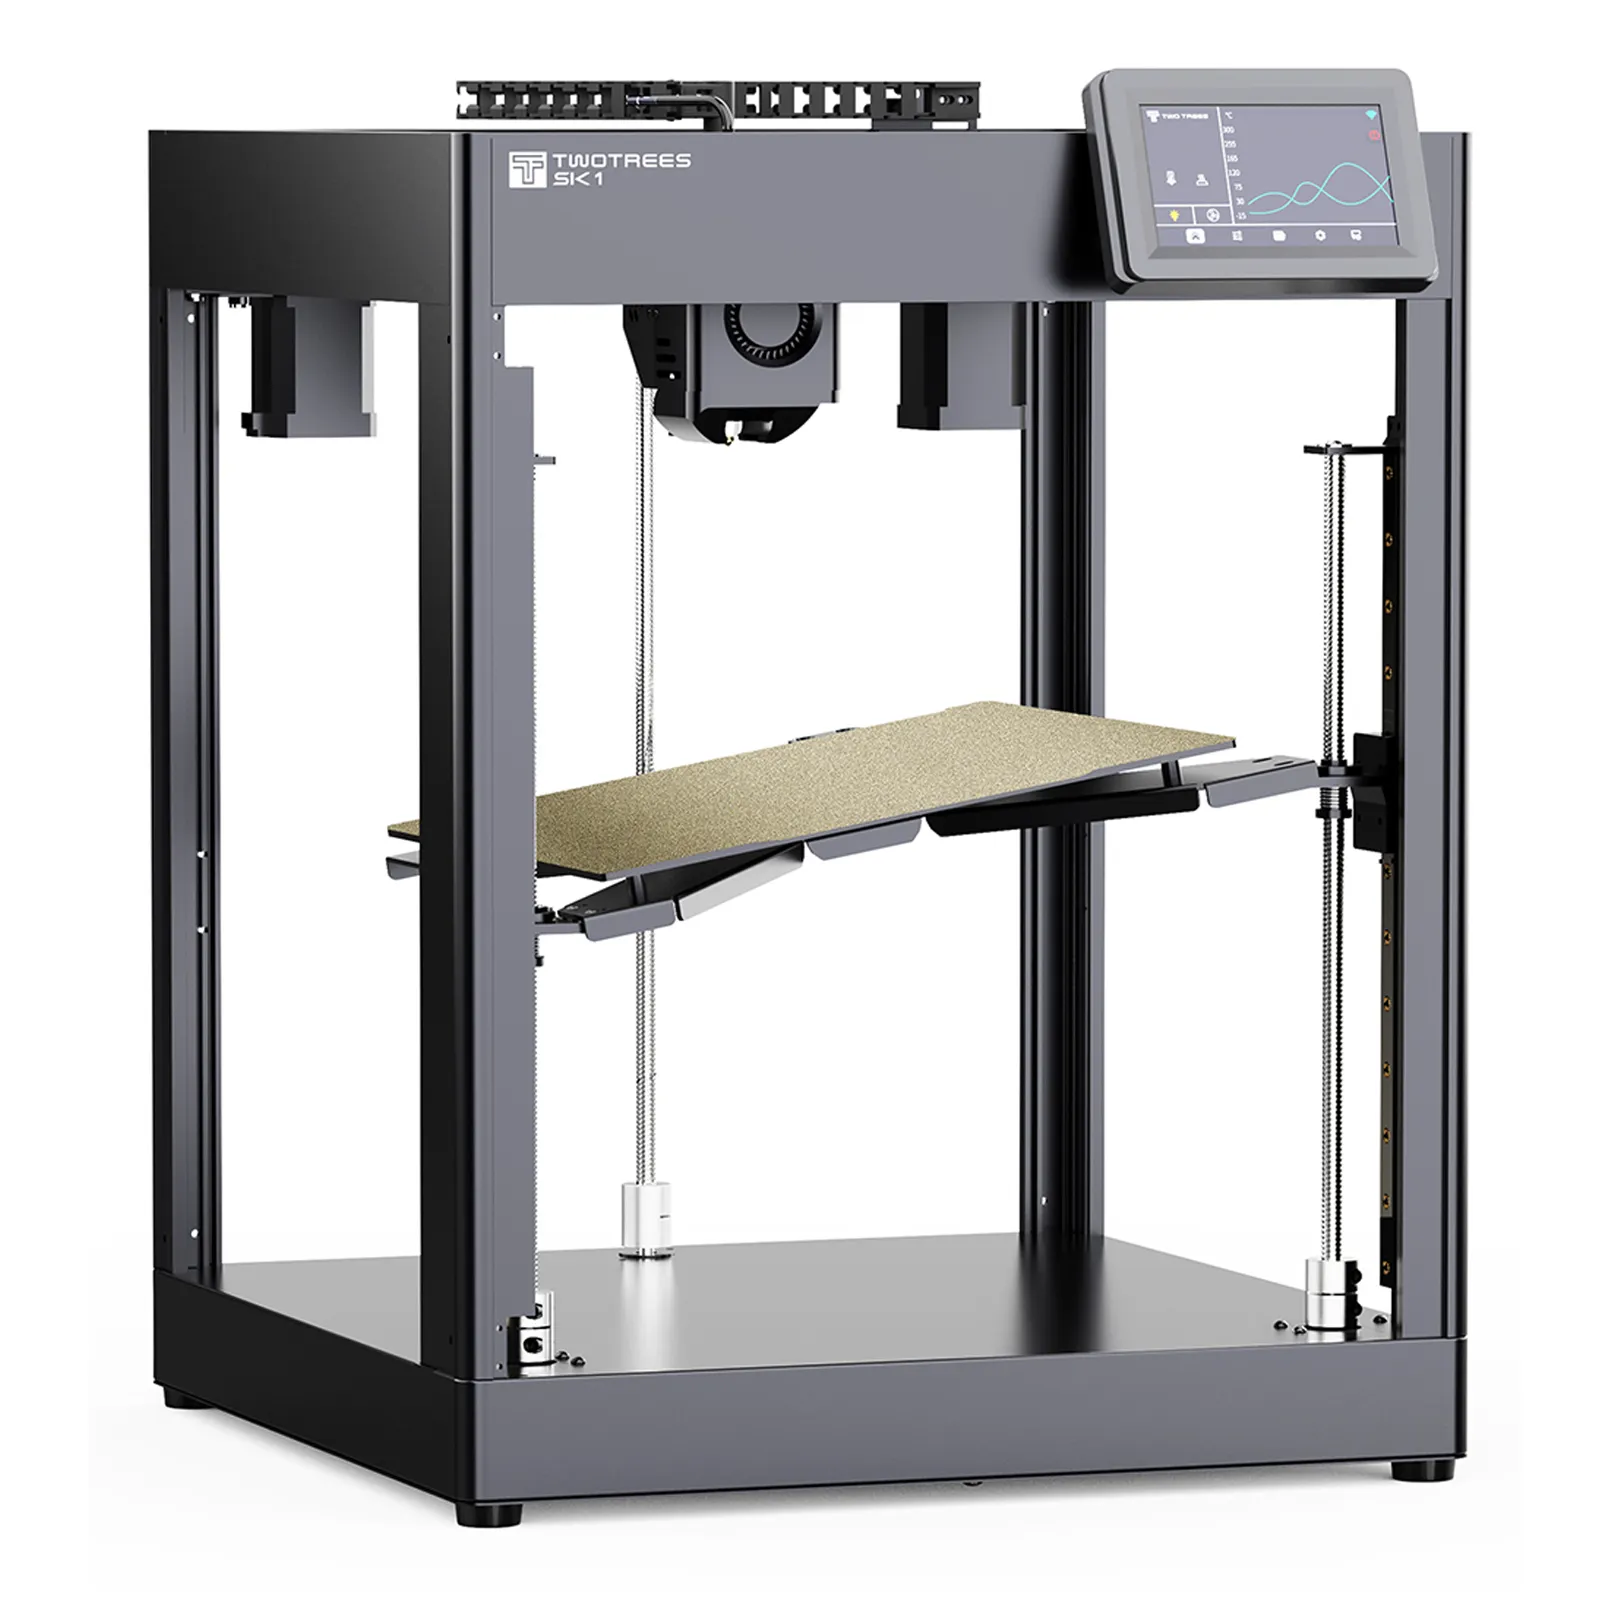 TWOTREES SK1 700 mm/s Klipper livellamento automatico industrale industriale 3D stampante prezzo della macchina in metallo 3D Impresora per stampanti 3D